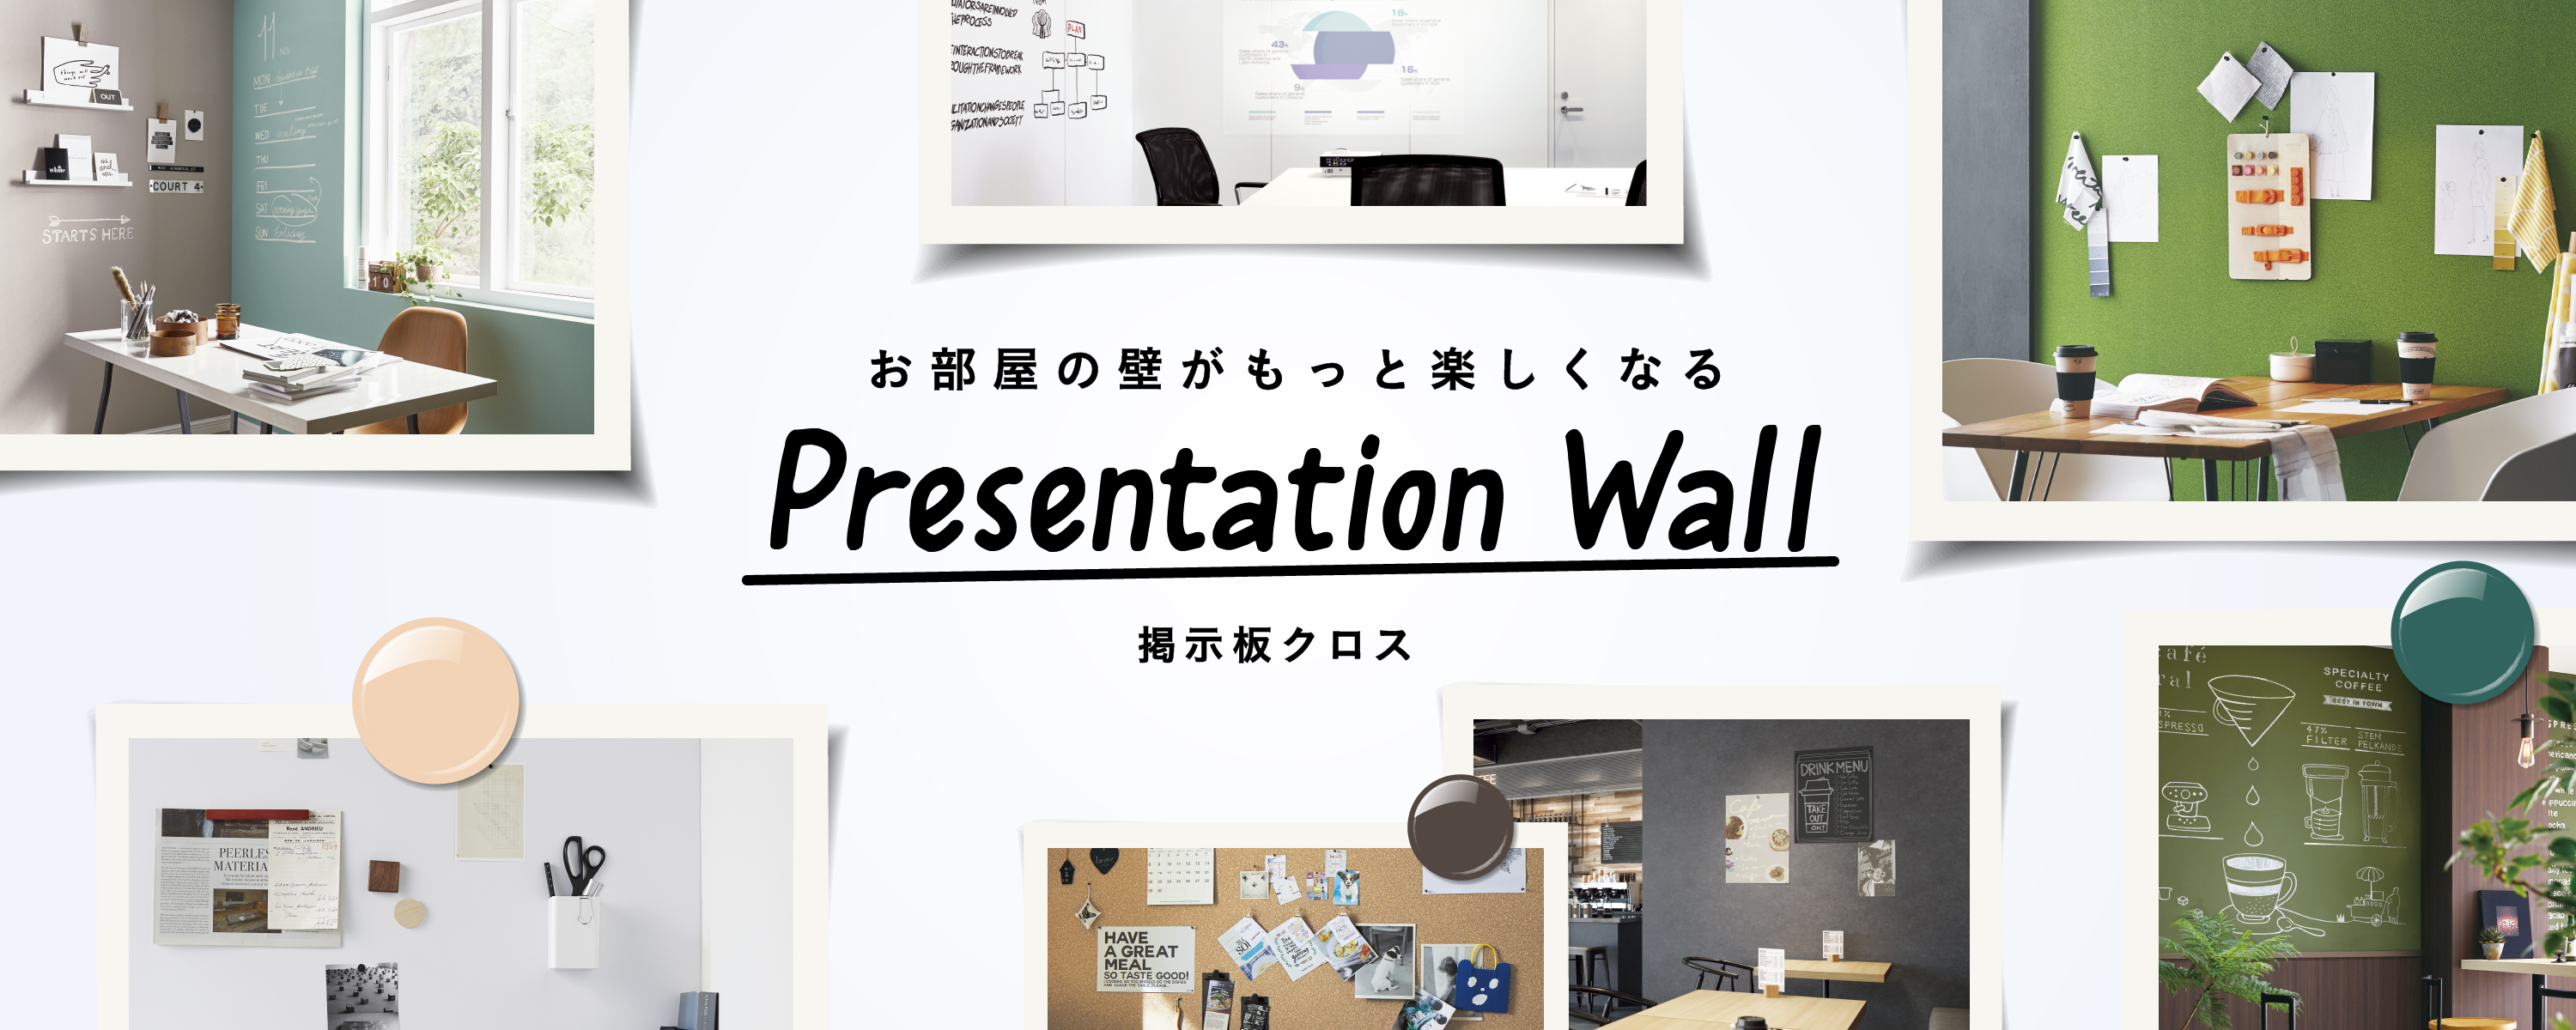 お部屋の壁がもっと楽しくなる Presentation wall 掲示板クロス